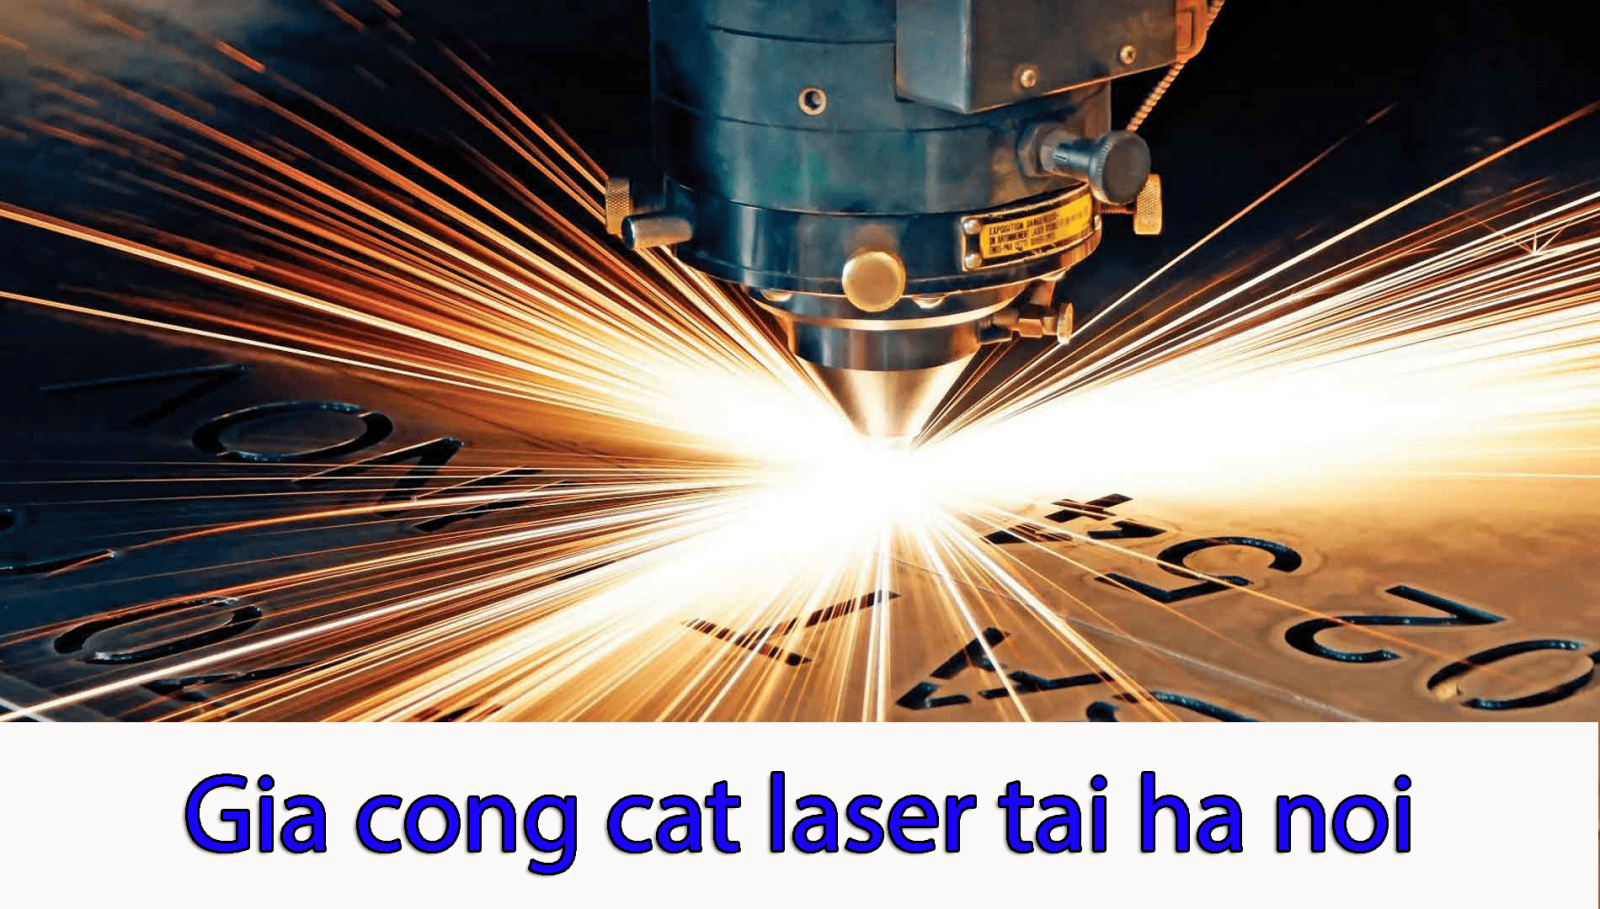 http://laservietnhat.com